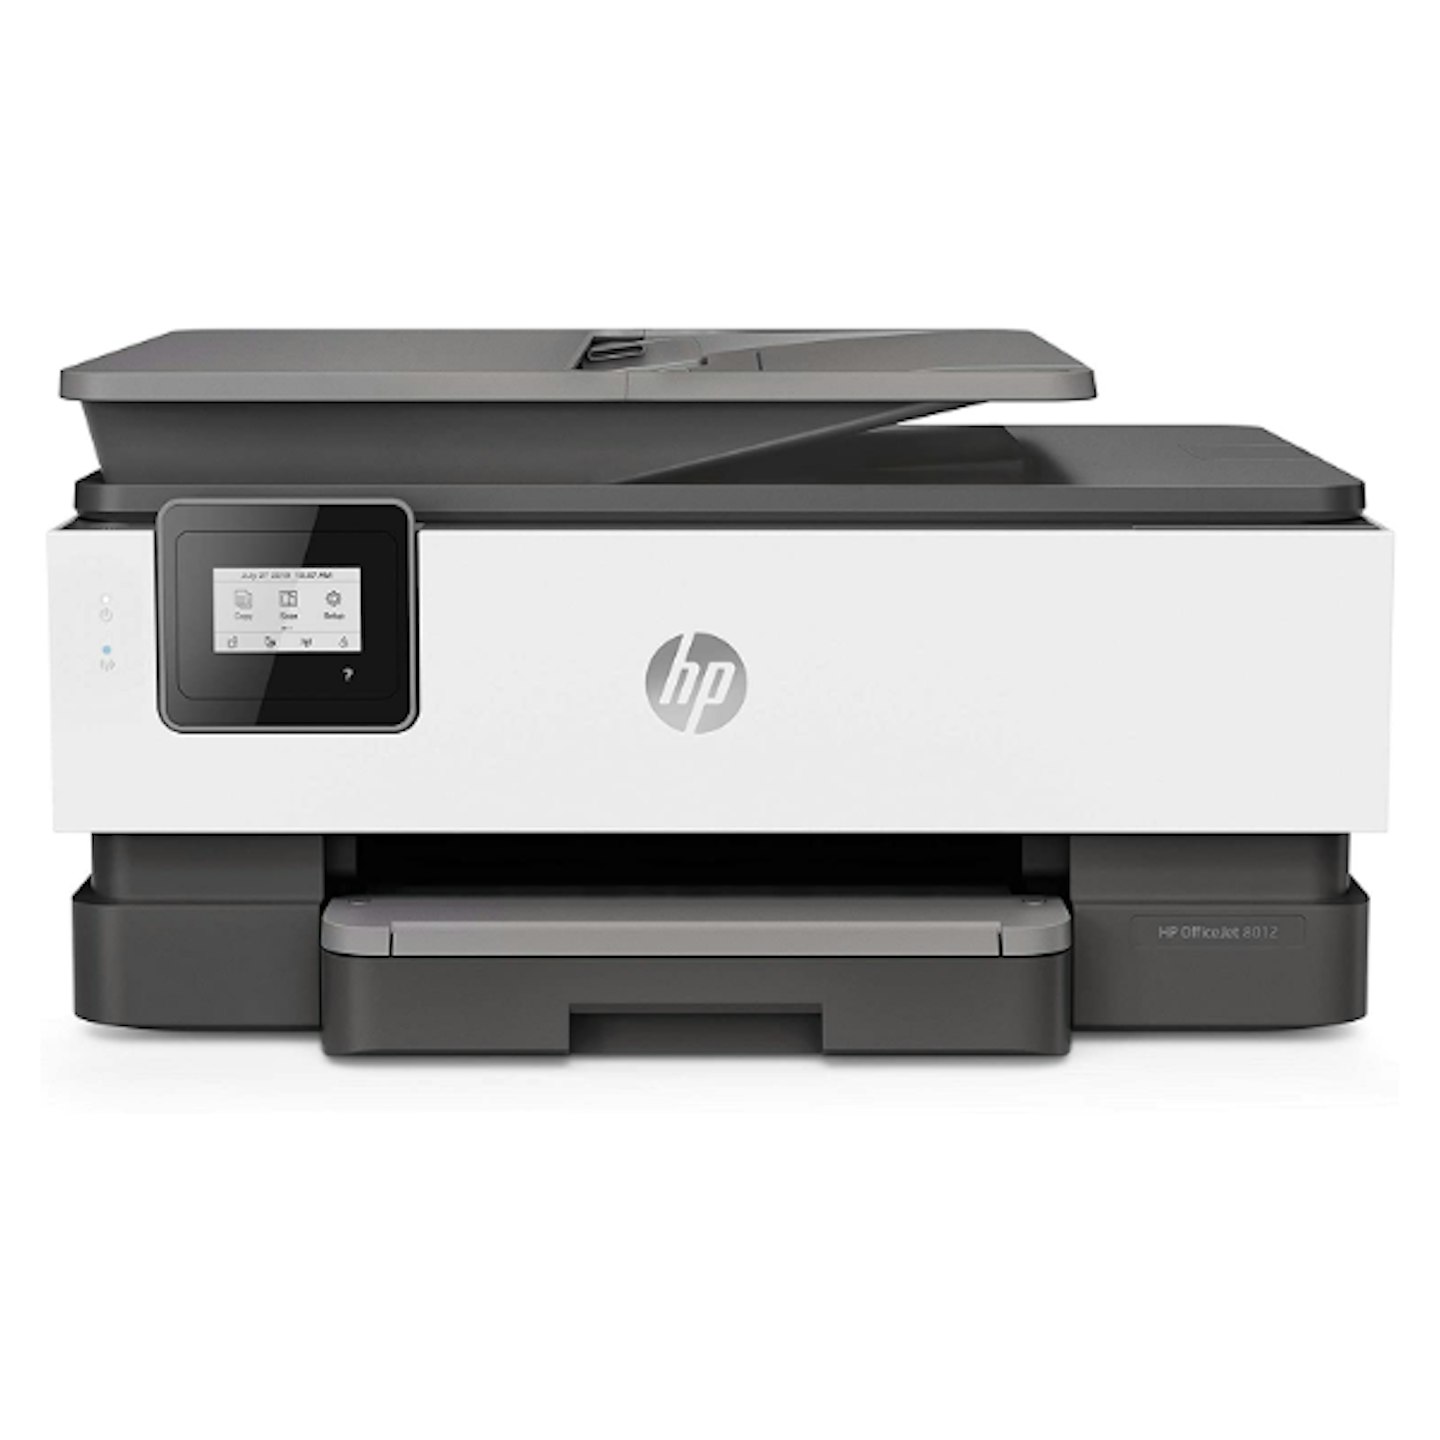 HP OfficeJet Pro 8012 All-in-One Wireless Printer